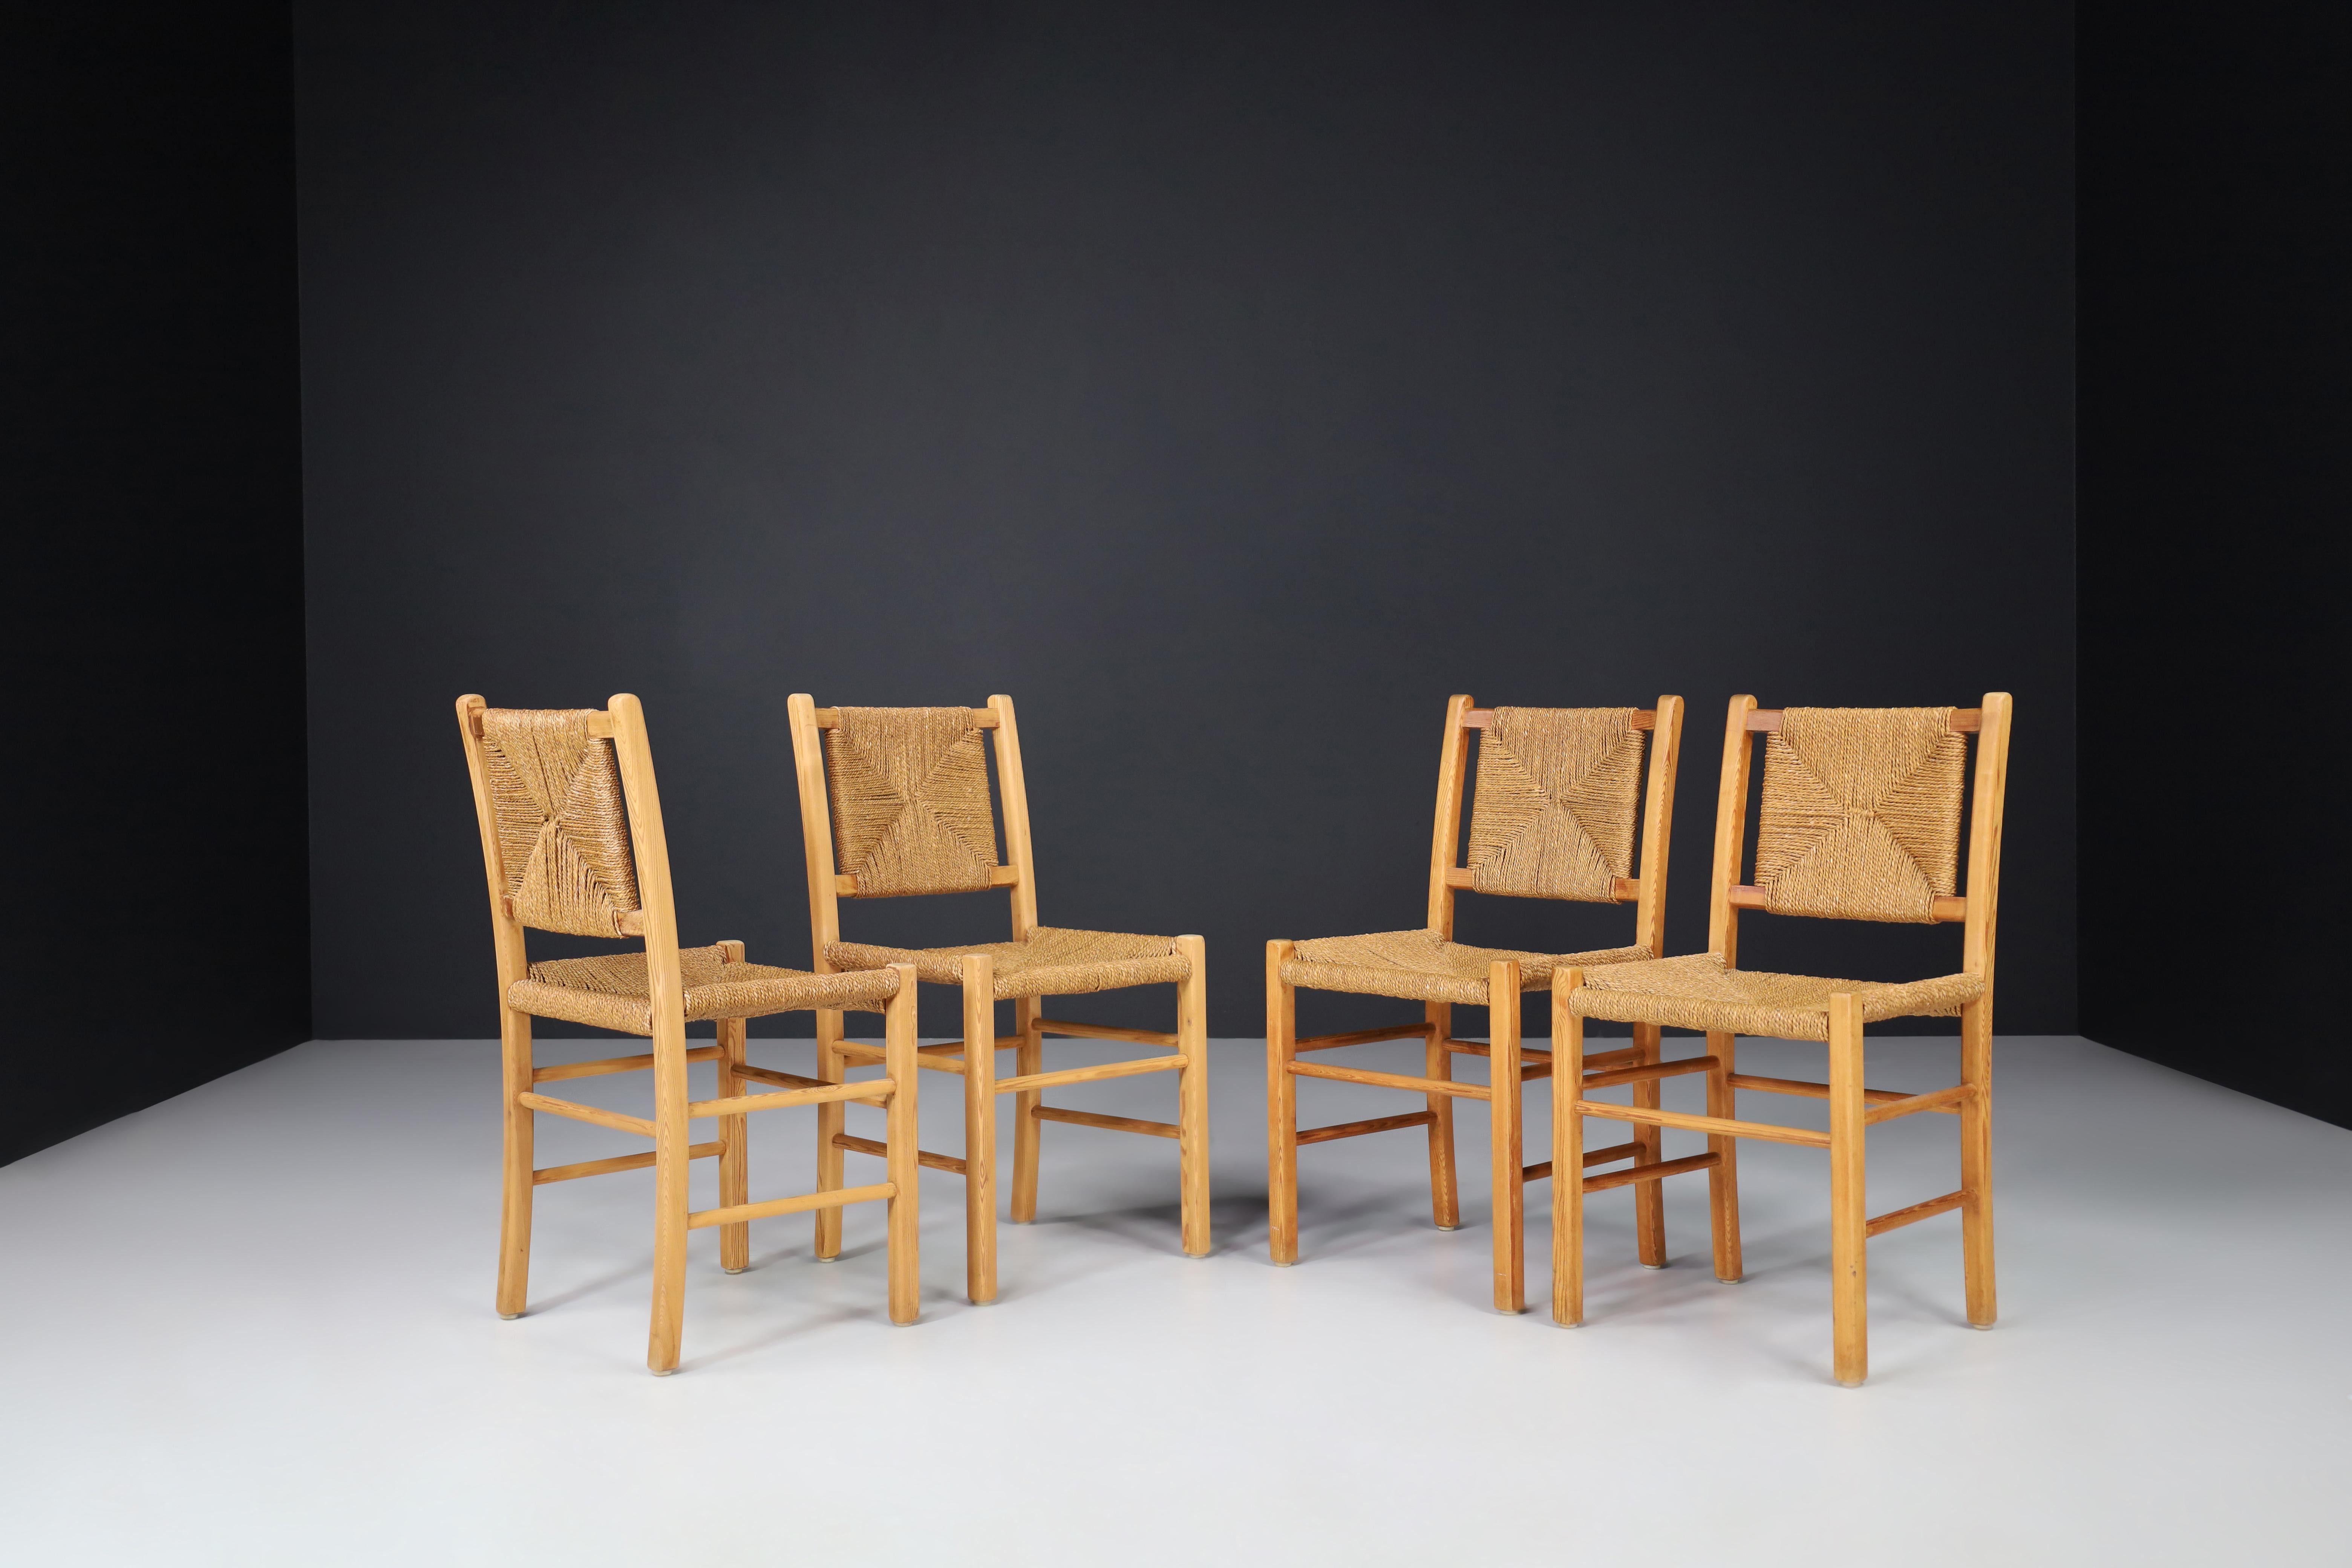 Esszimmerstühle aus Kiefer und Seil, Frankreich 1960er Jahre. 

Diese Stühle sind aus massivem Kiefernholz und handgeflochtenen Kordeln für Sitz und Rückenlehne gefertigt. Die Stühle sind in gutem Vintage-Zustand und können als Ess- oder